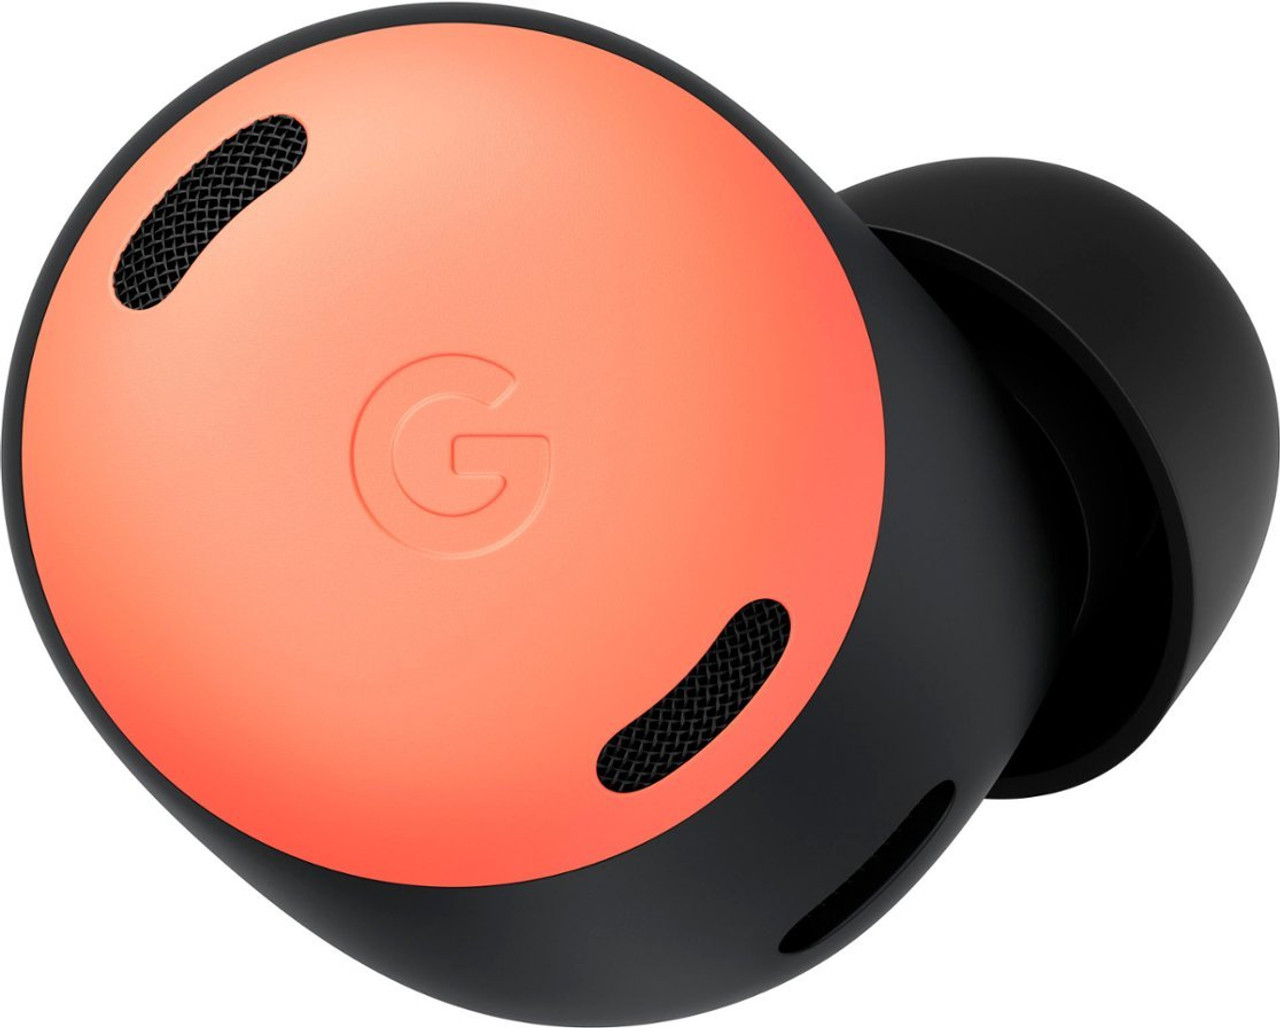 Google Pixel Buds Pro Noise-Canceling True Wireless GA03202-US